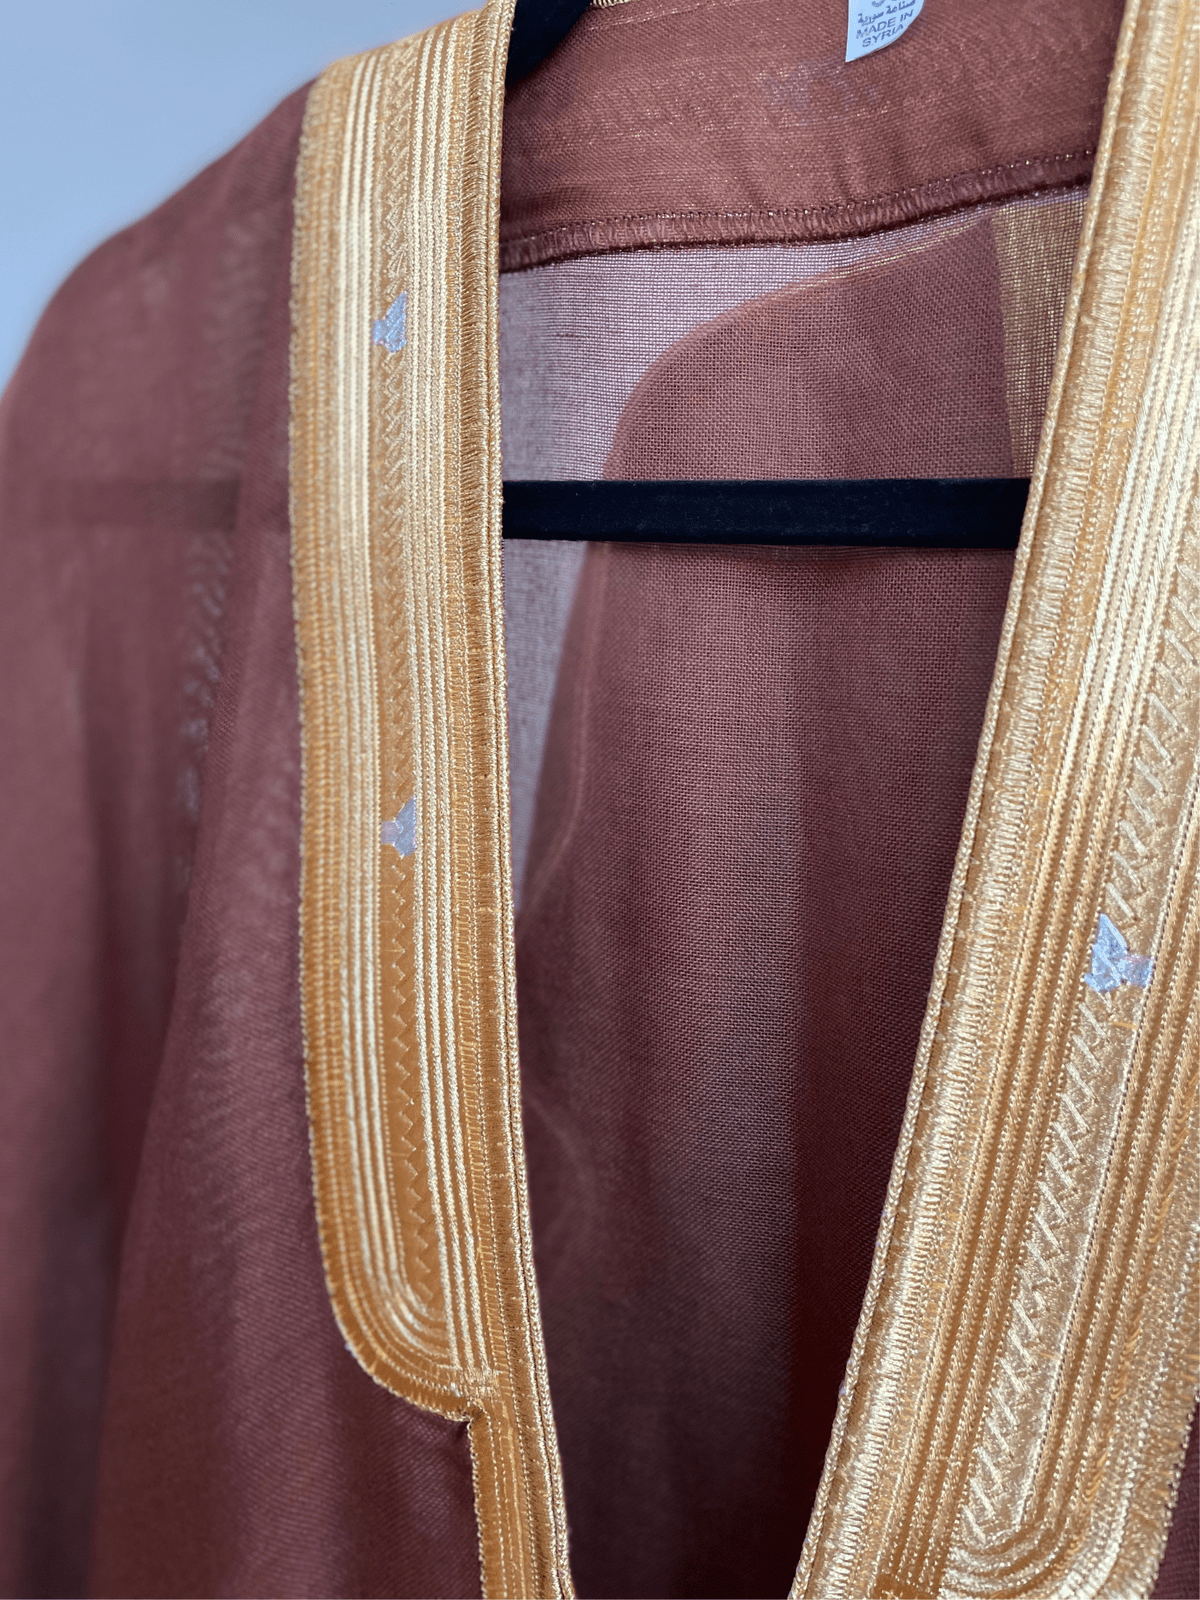 brown-bisht -bisht-cloak-arab-clothing